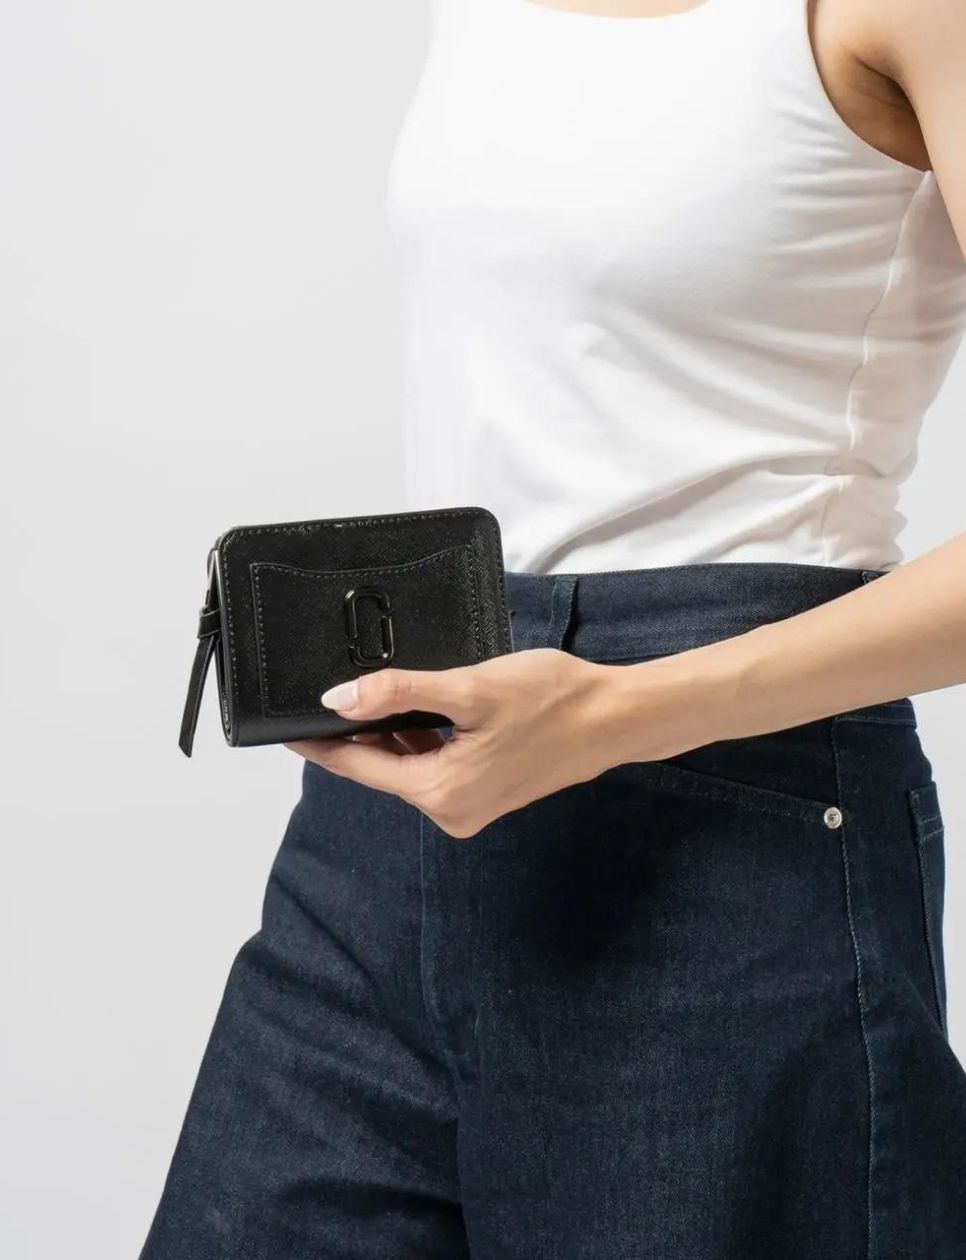 Tampil simple dan minimalis dengan compact wallet